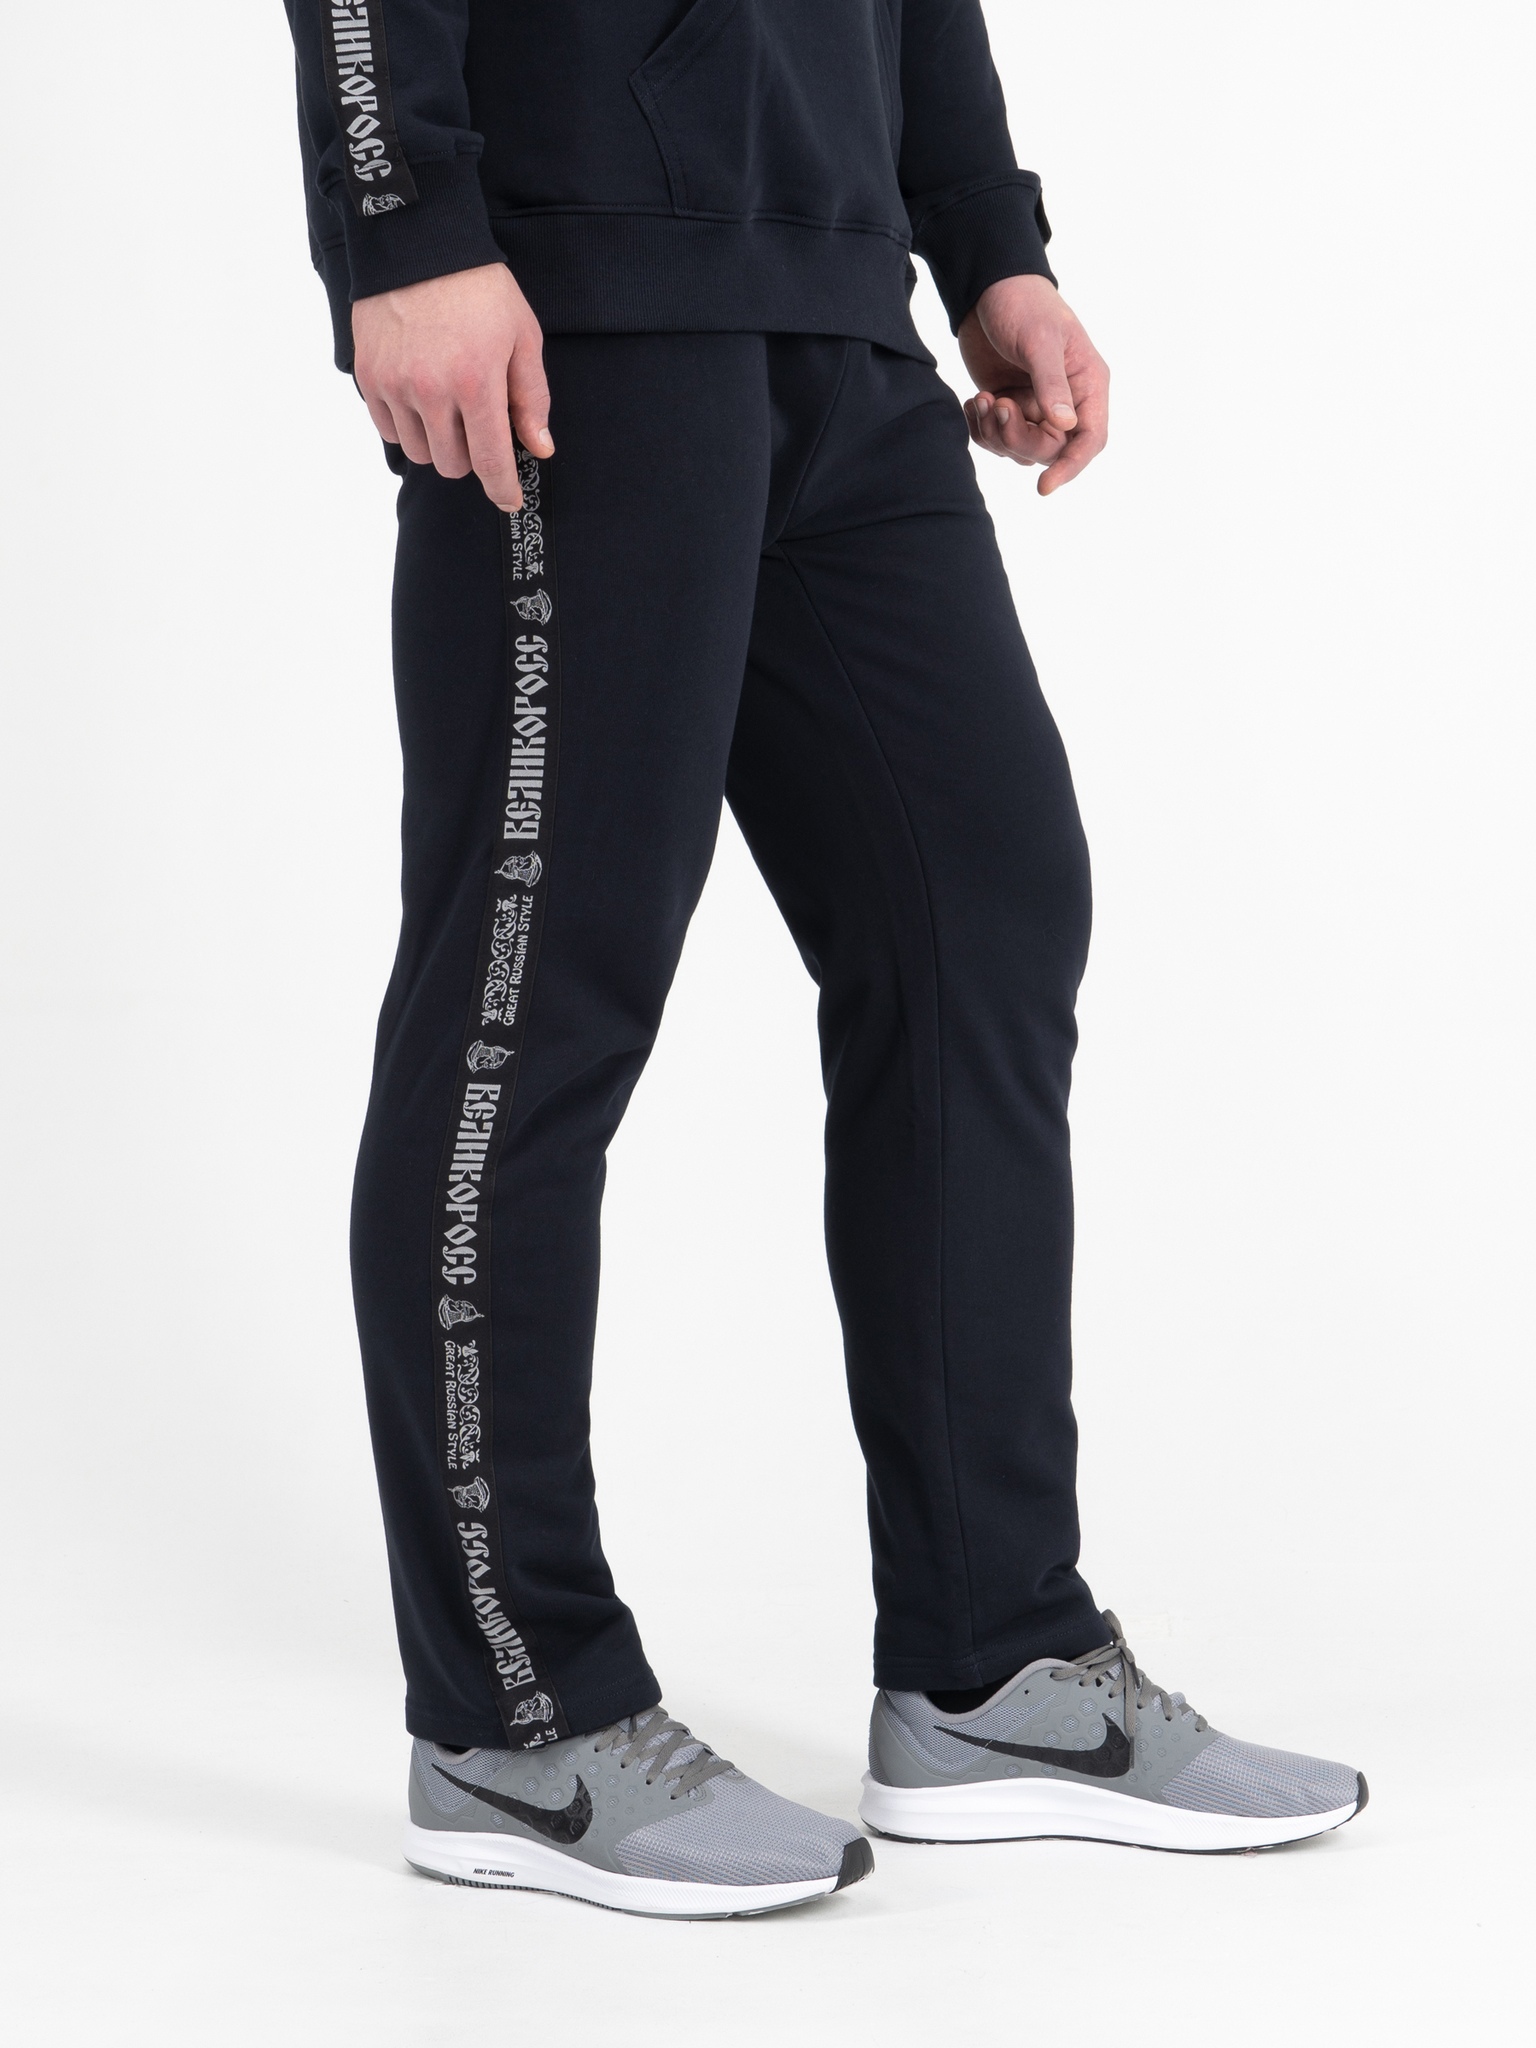 Спортивные брюки мужские Великоросс BM синие 50 RU